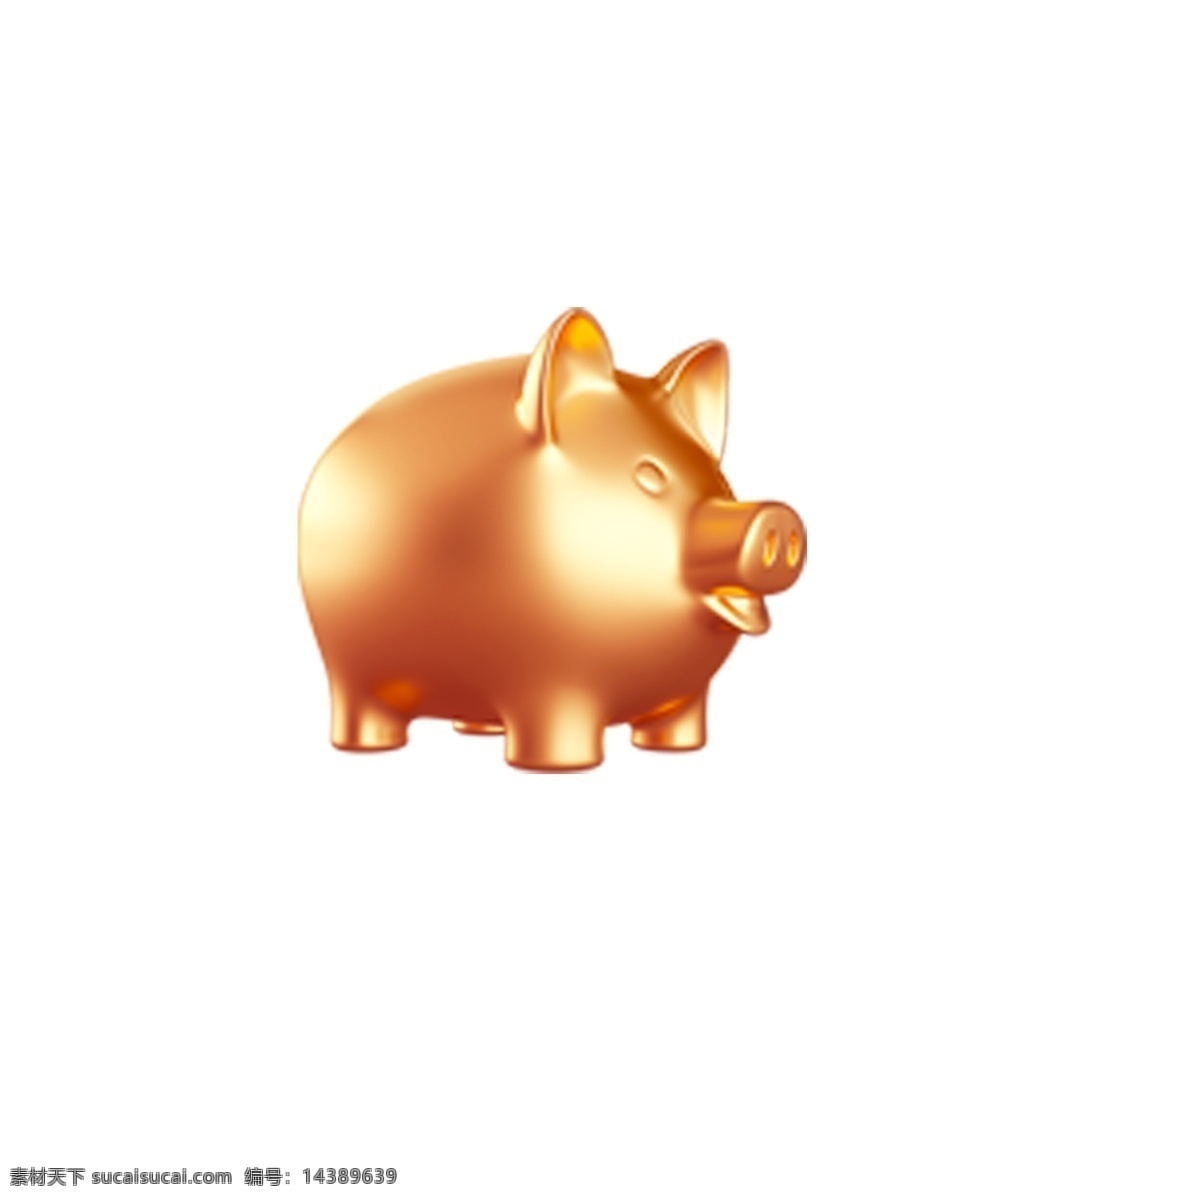 金黄色 金 猪 免 抠 图 小猪 宠物狗 可爱的小猪 动物猪 储钱罐 小猪存钱罐 金黄色的金猪 免抠图